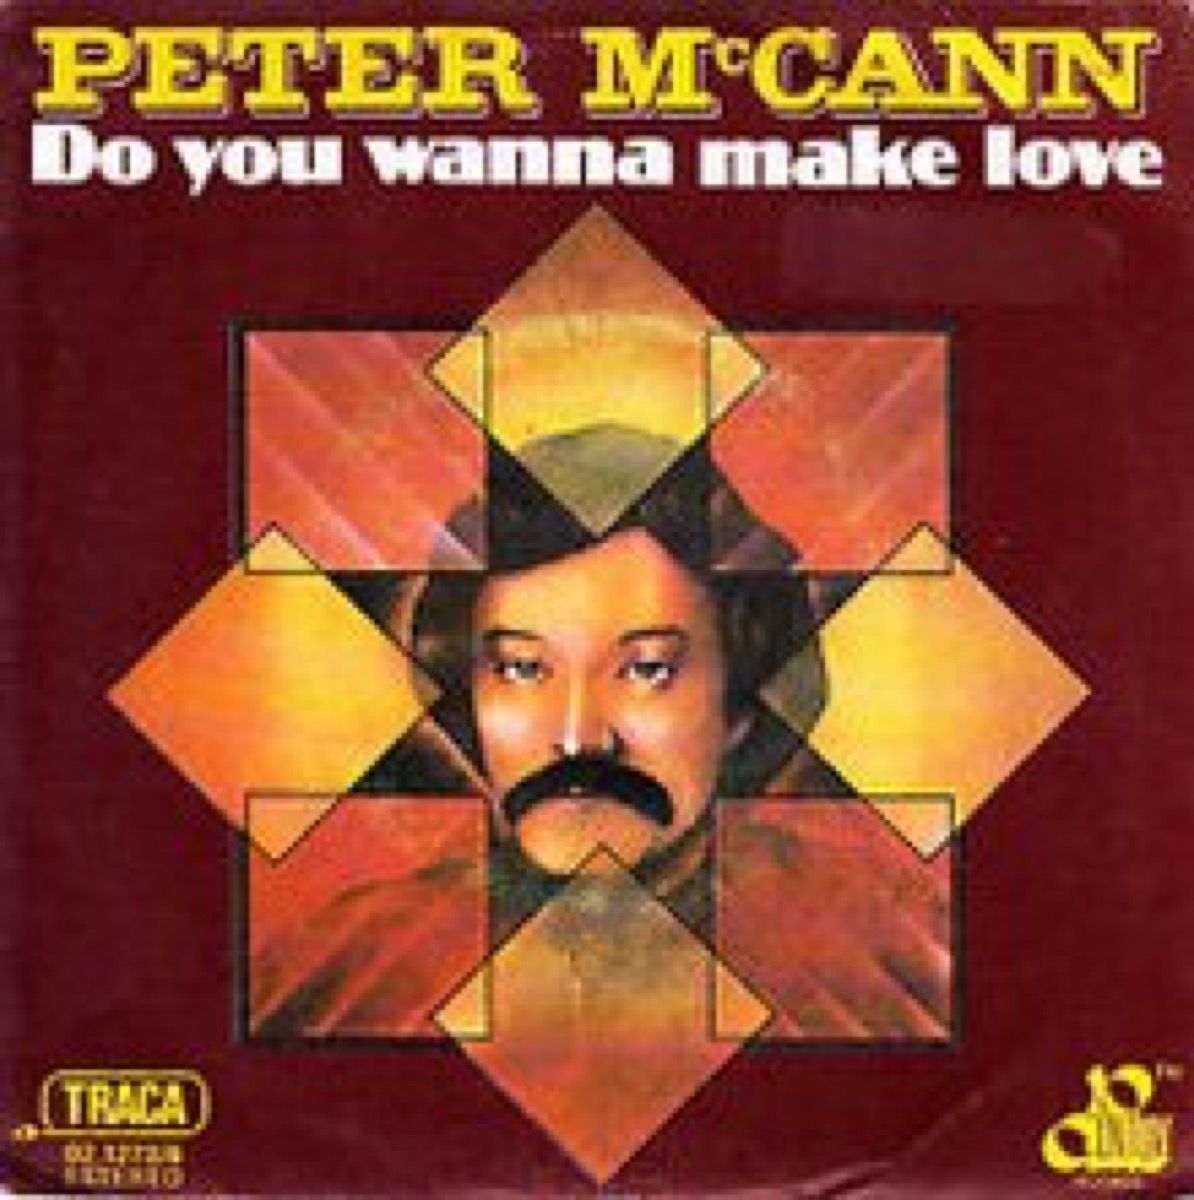 Do You Wanna Make Love de Peter McCann, maravilla de un éxito de la década de 1970